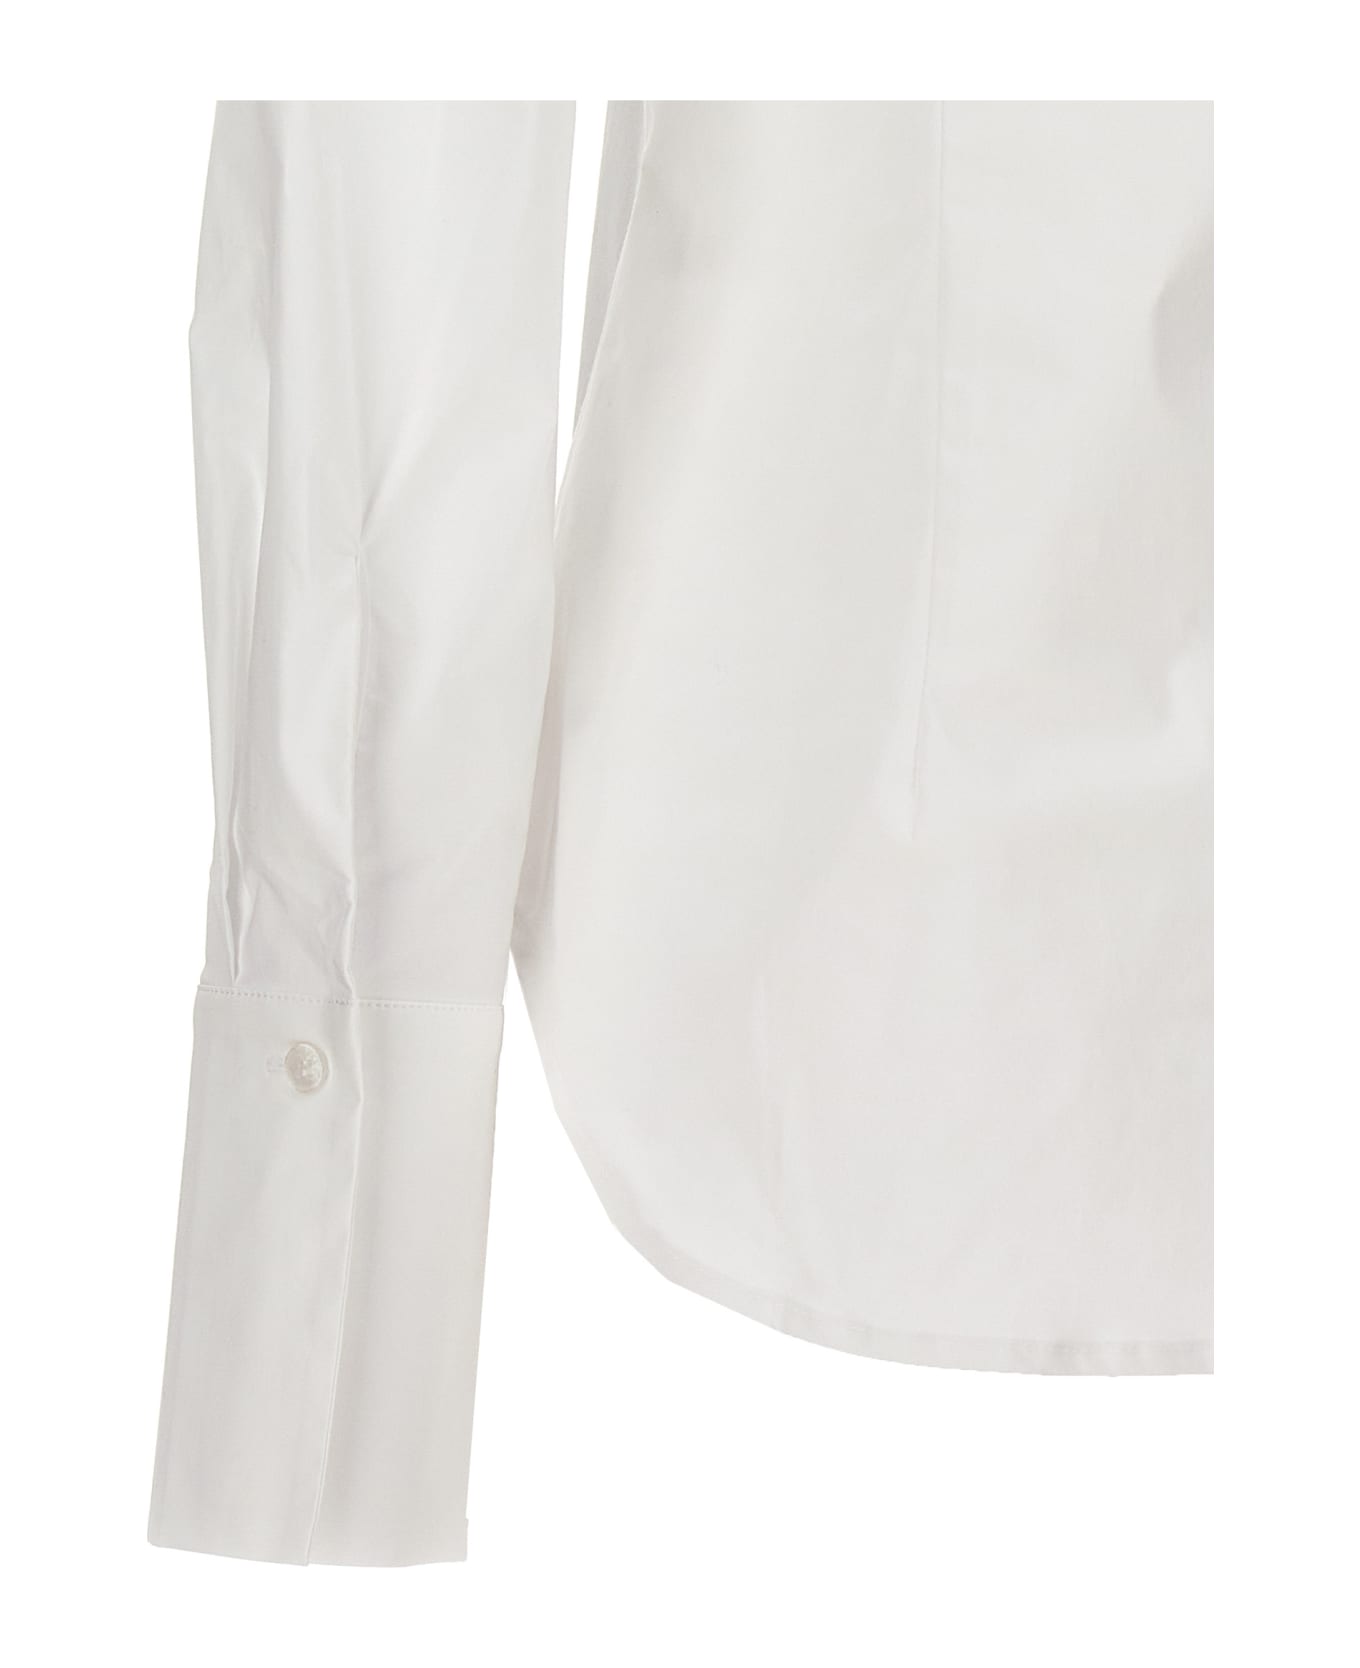 Balossa 'noara' Shirt - White